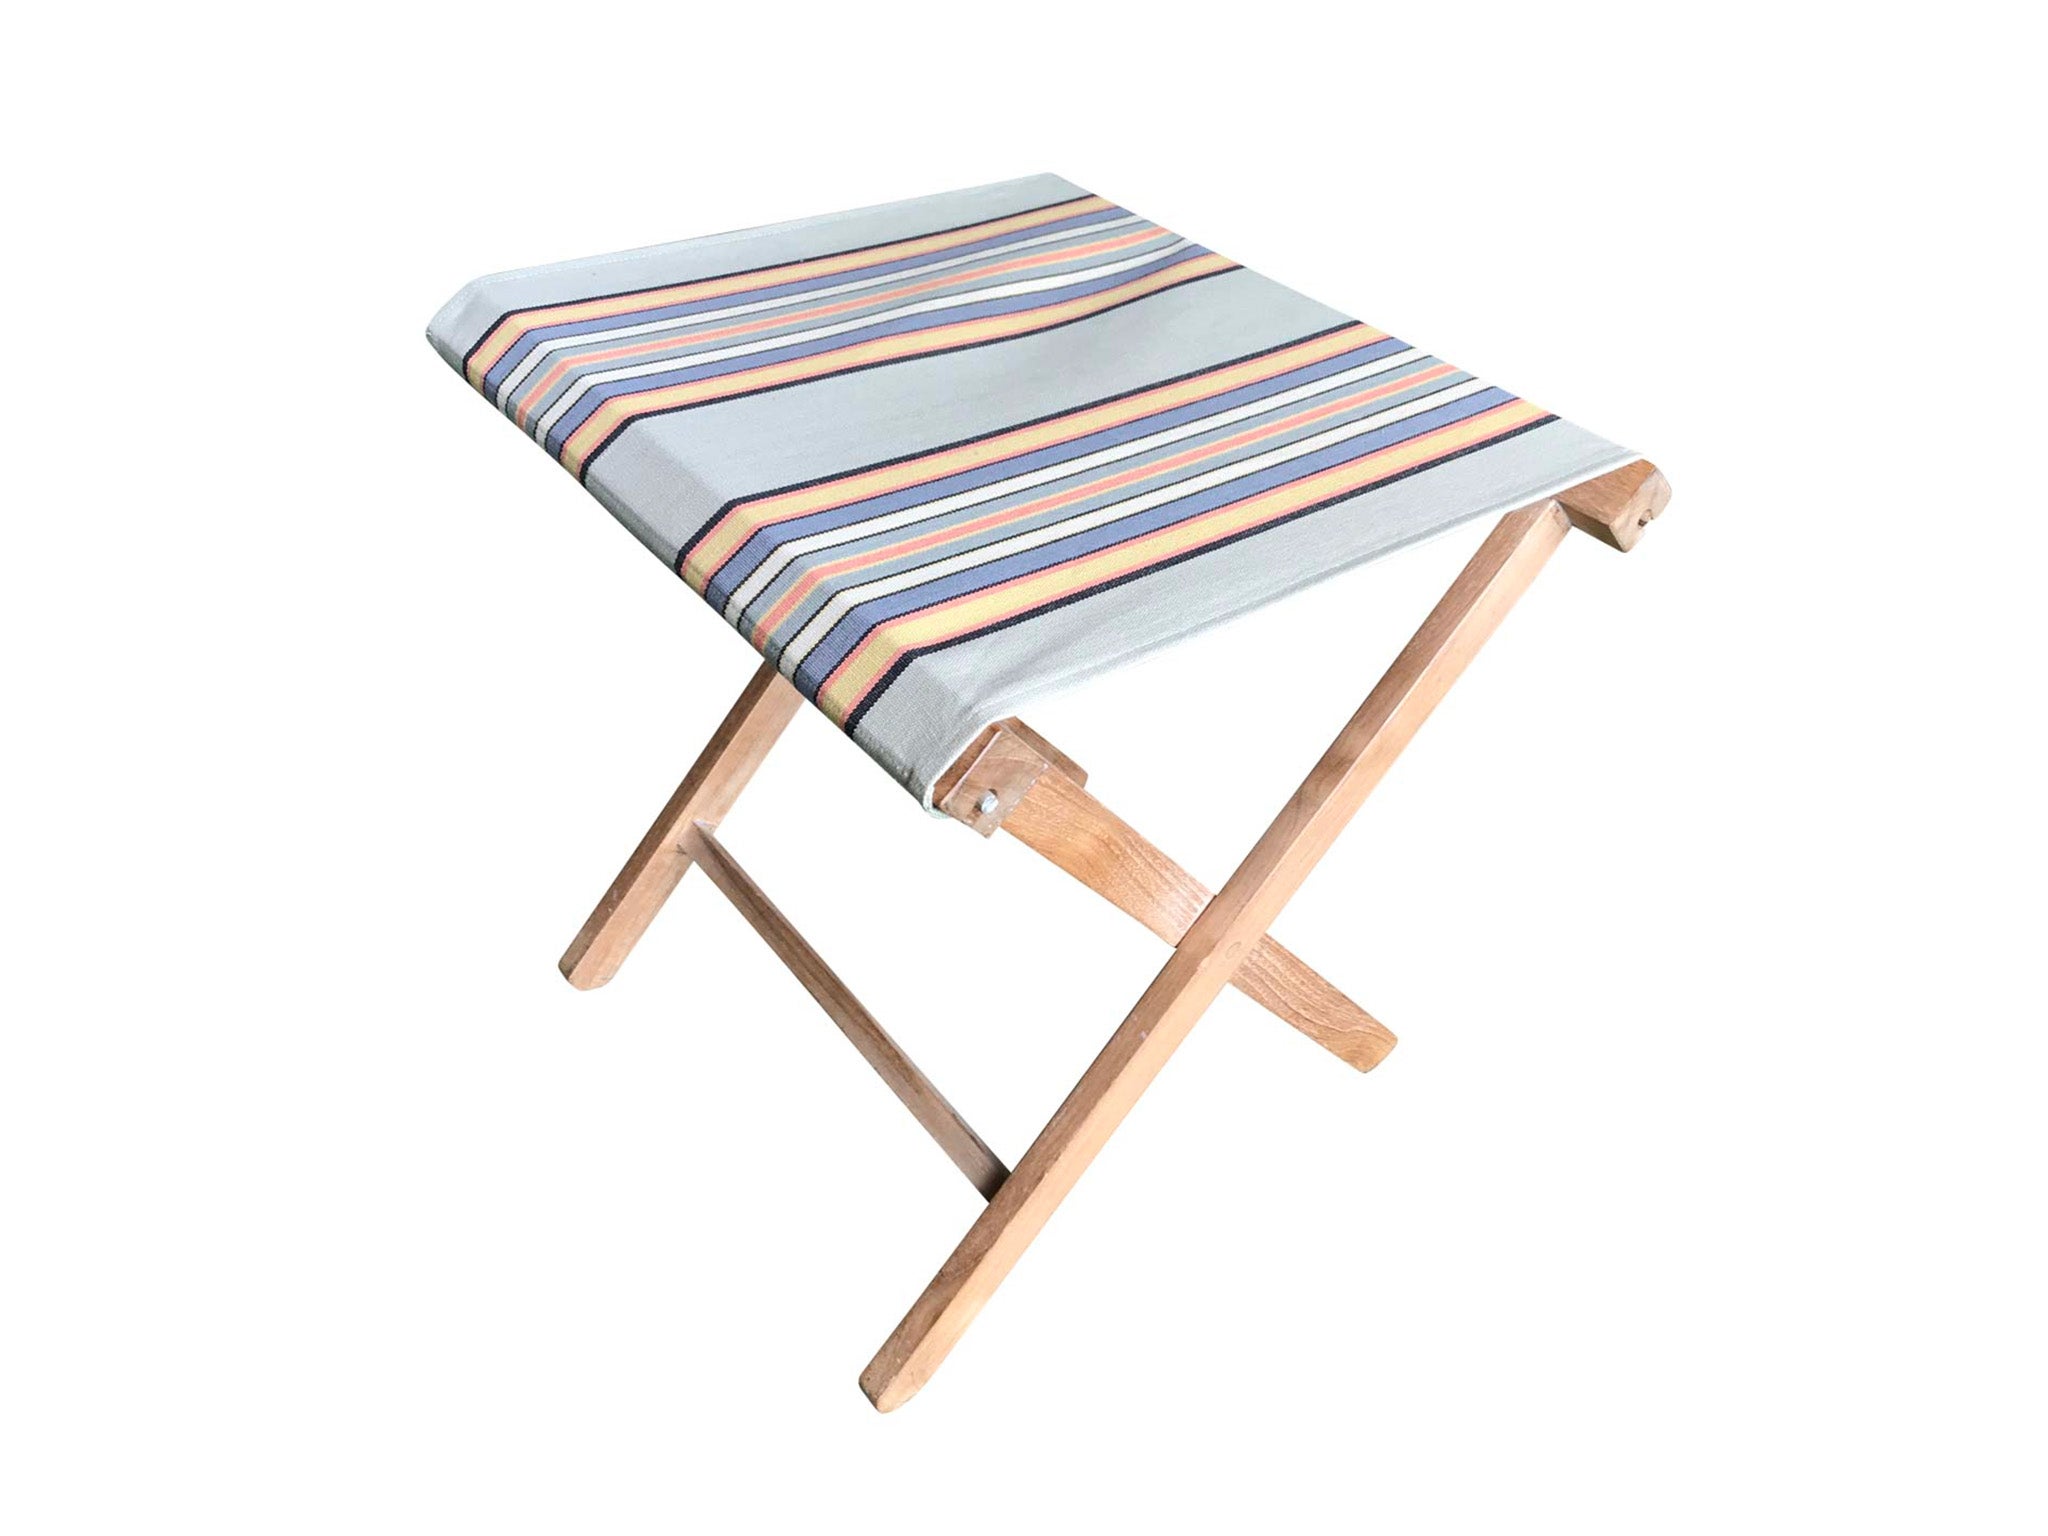 Stripes Company stool